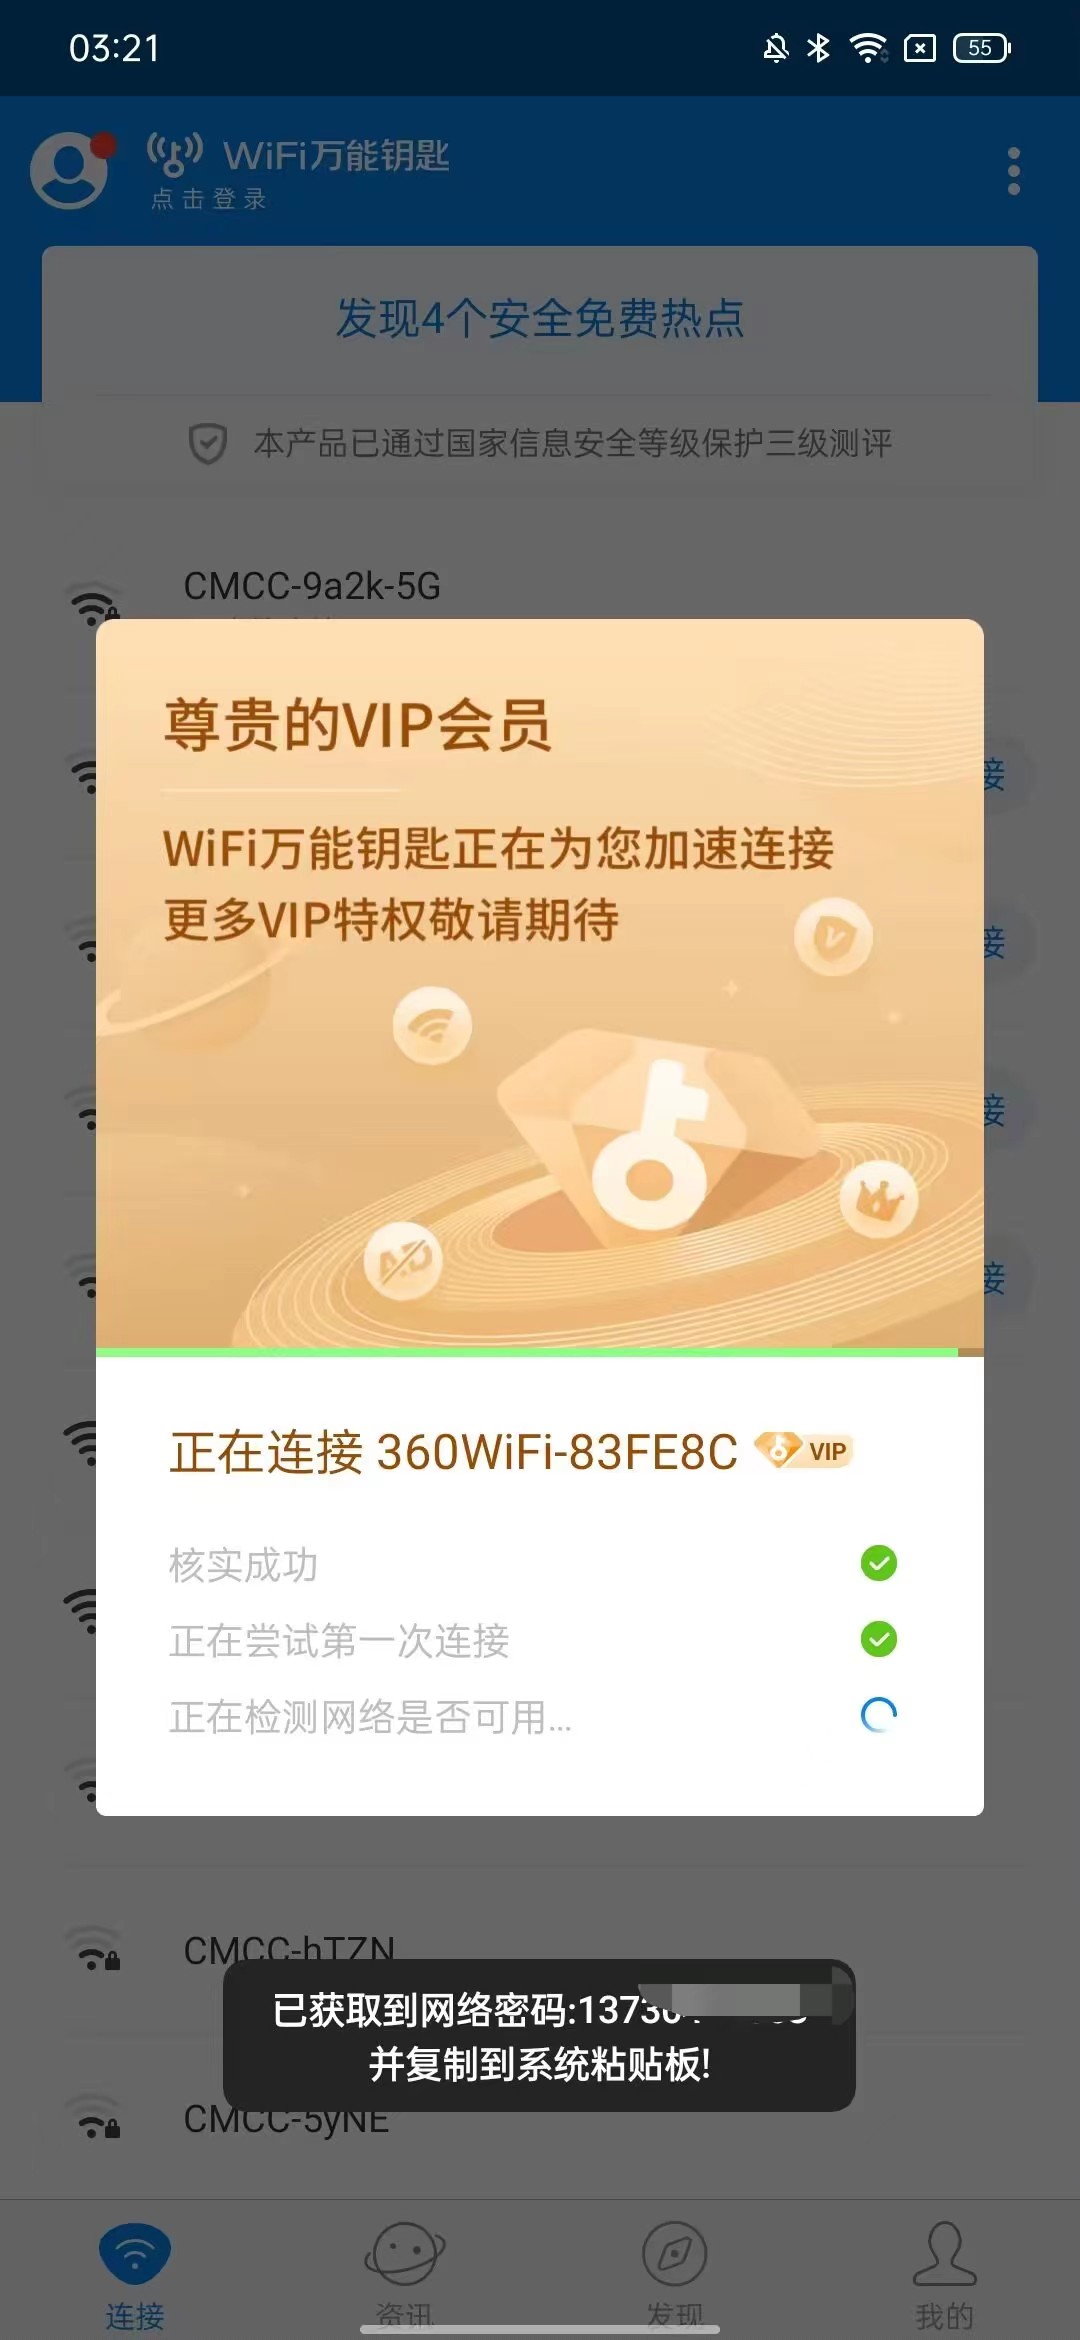 WIFI万能钥匙修复版去广告解锁SVIP 屠城辅助网www.tcfz1.com9732